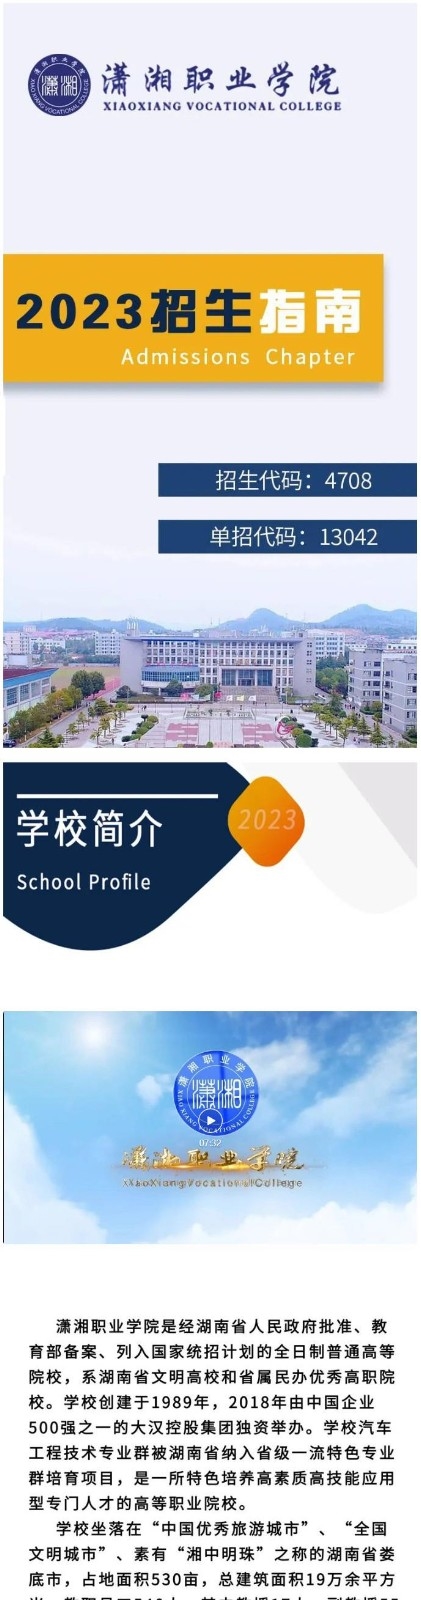 潇湘职业学院2023年招生指南